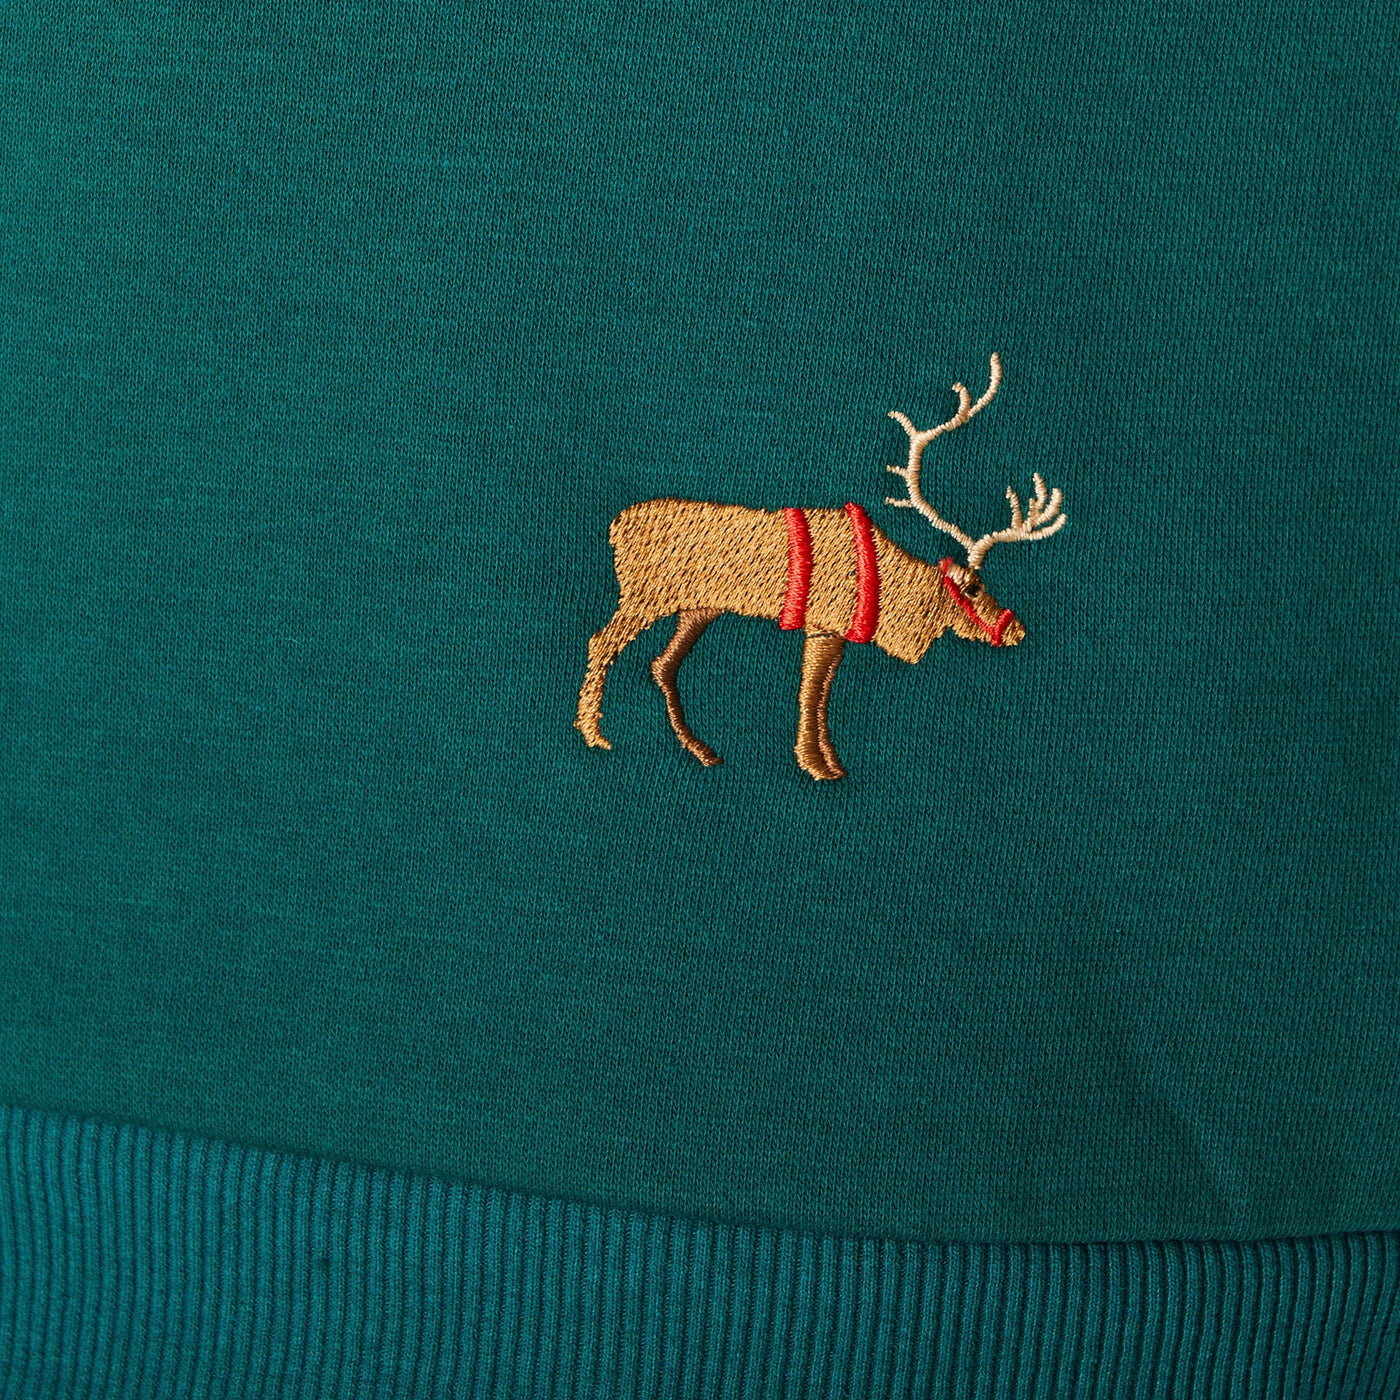 Men's Green Christmas Sweatshirt